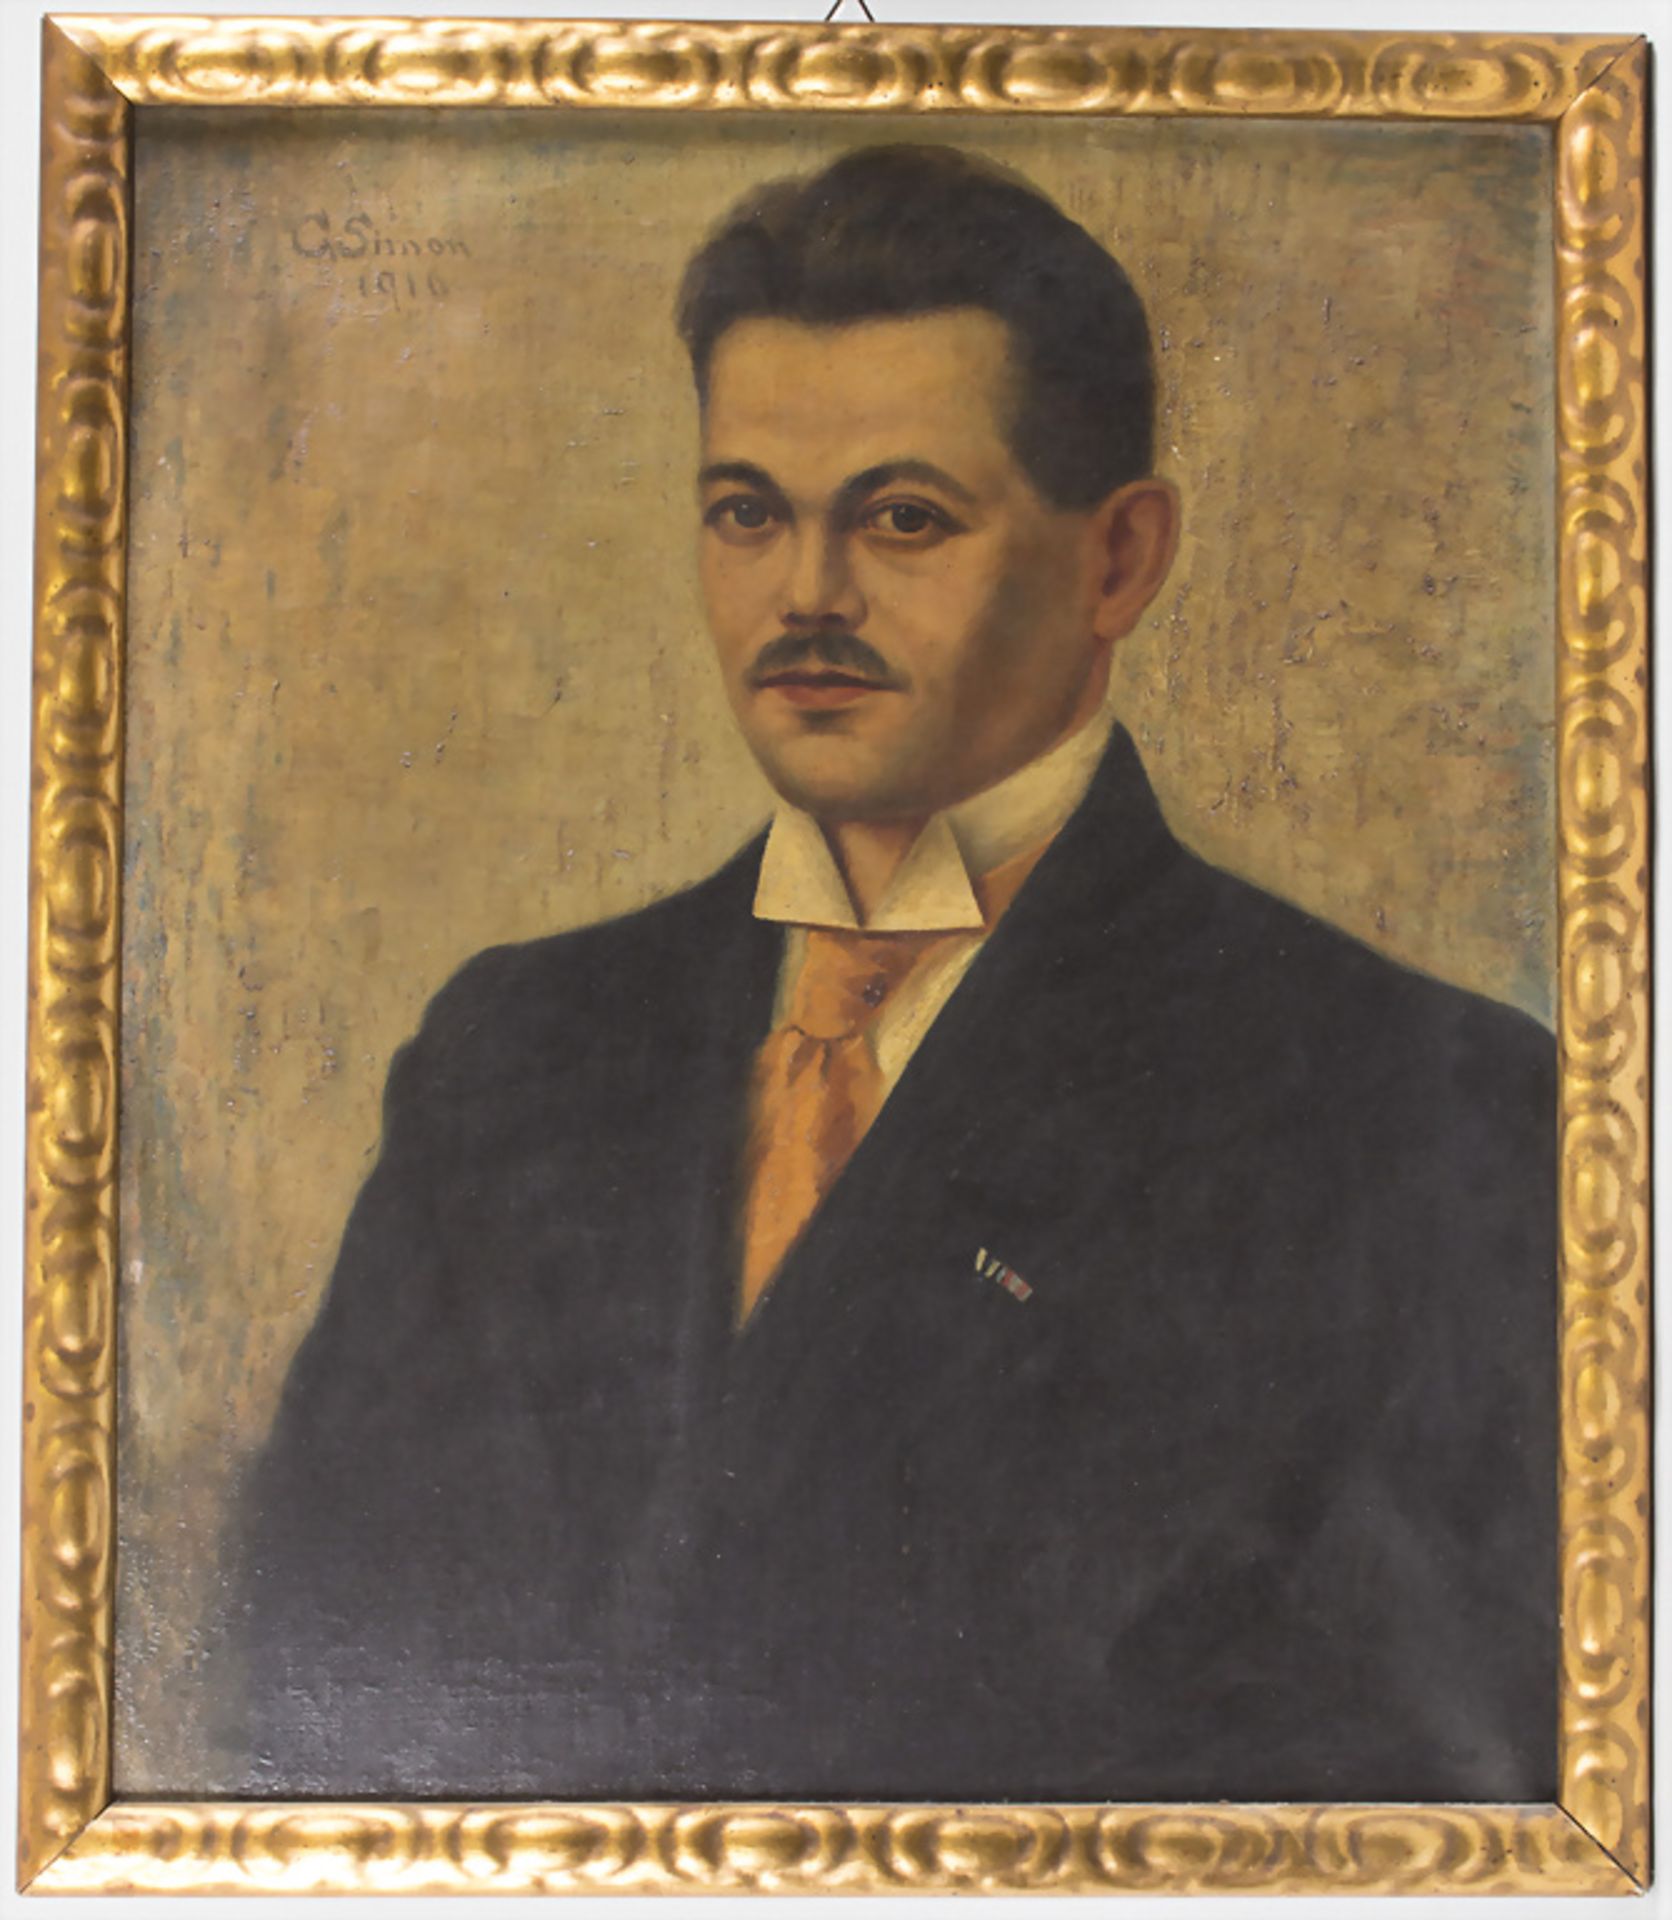 G. Simon, 'Porträt eines Herrn im Anzug' / 'A portrait of a gentleman in a suit', 1910